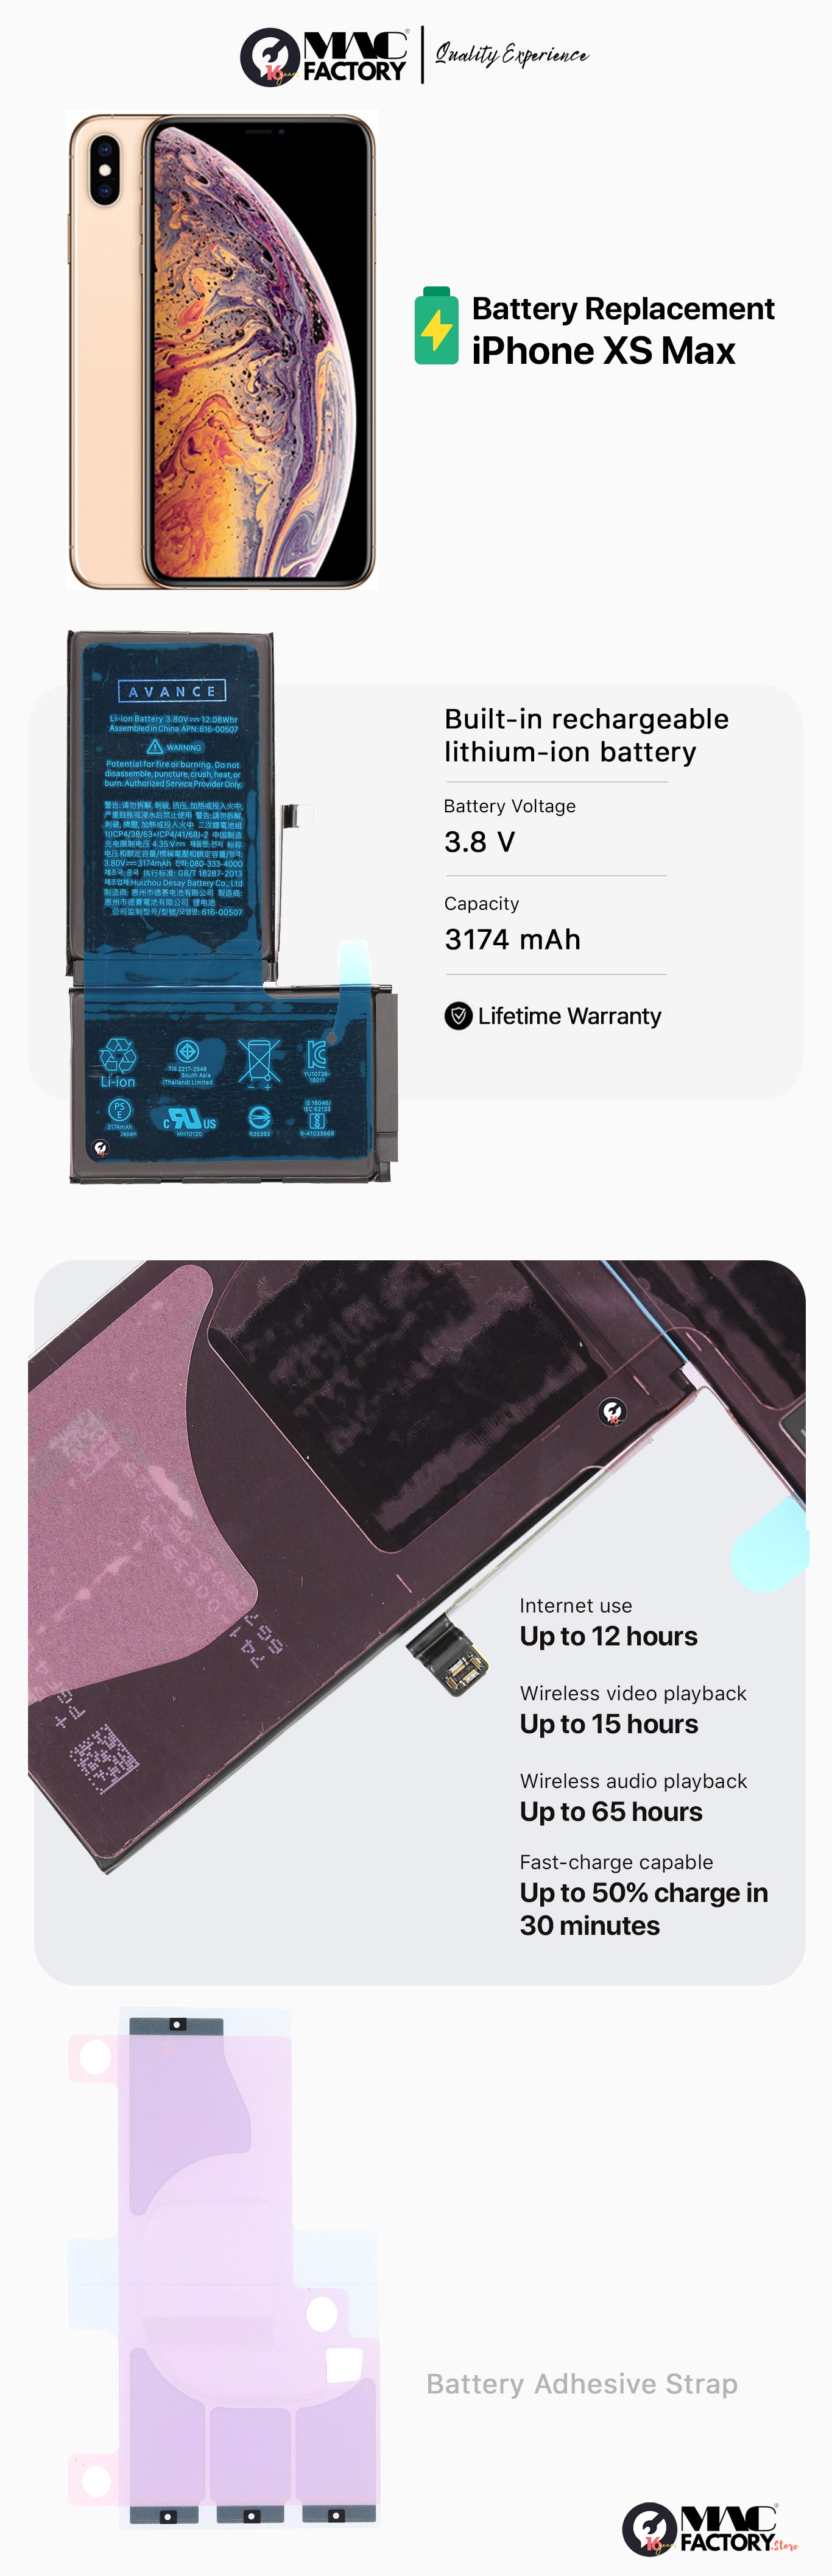 iPhoneXSMax-battery-replacement